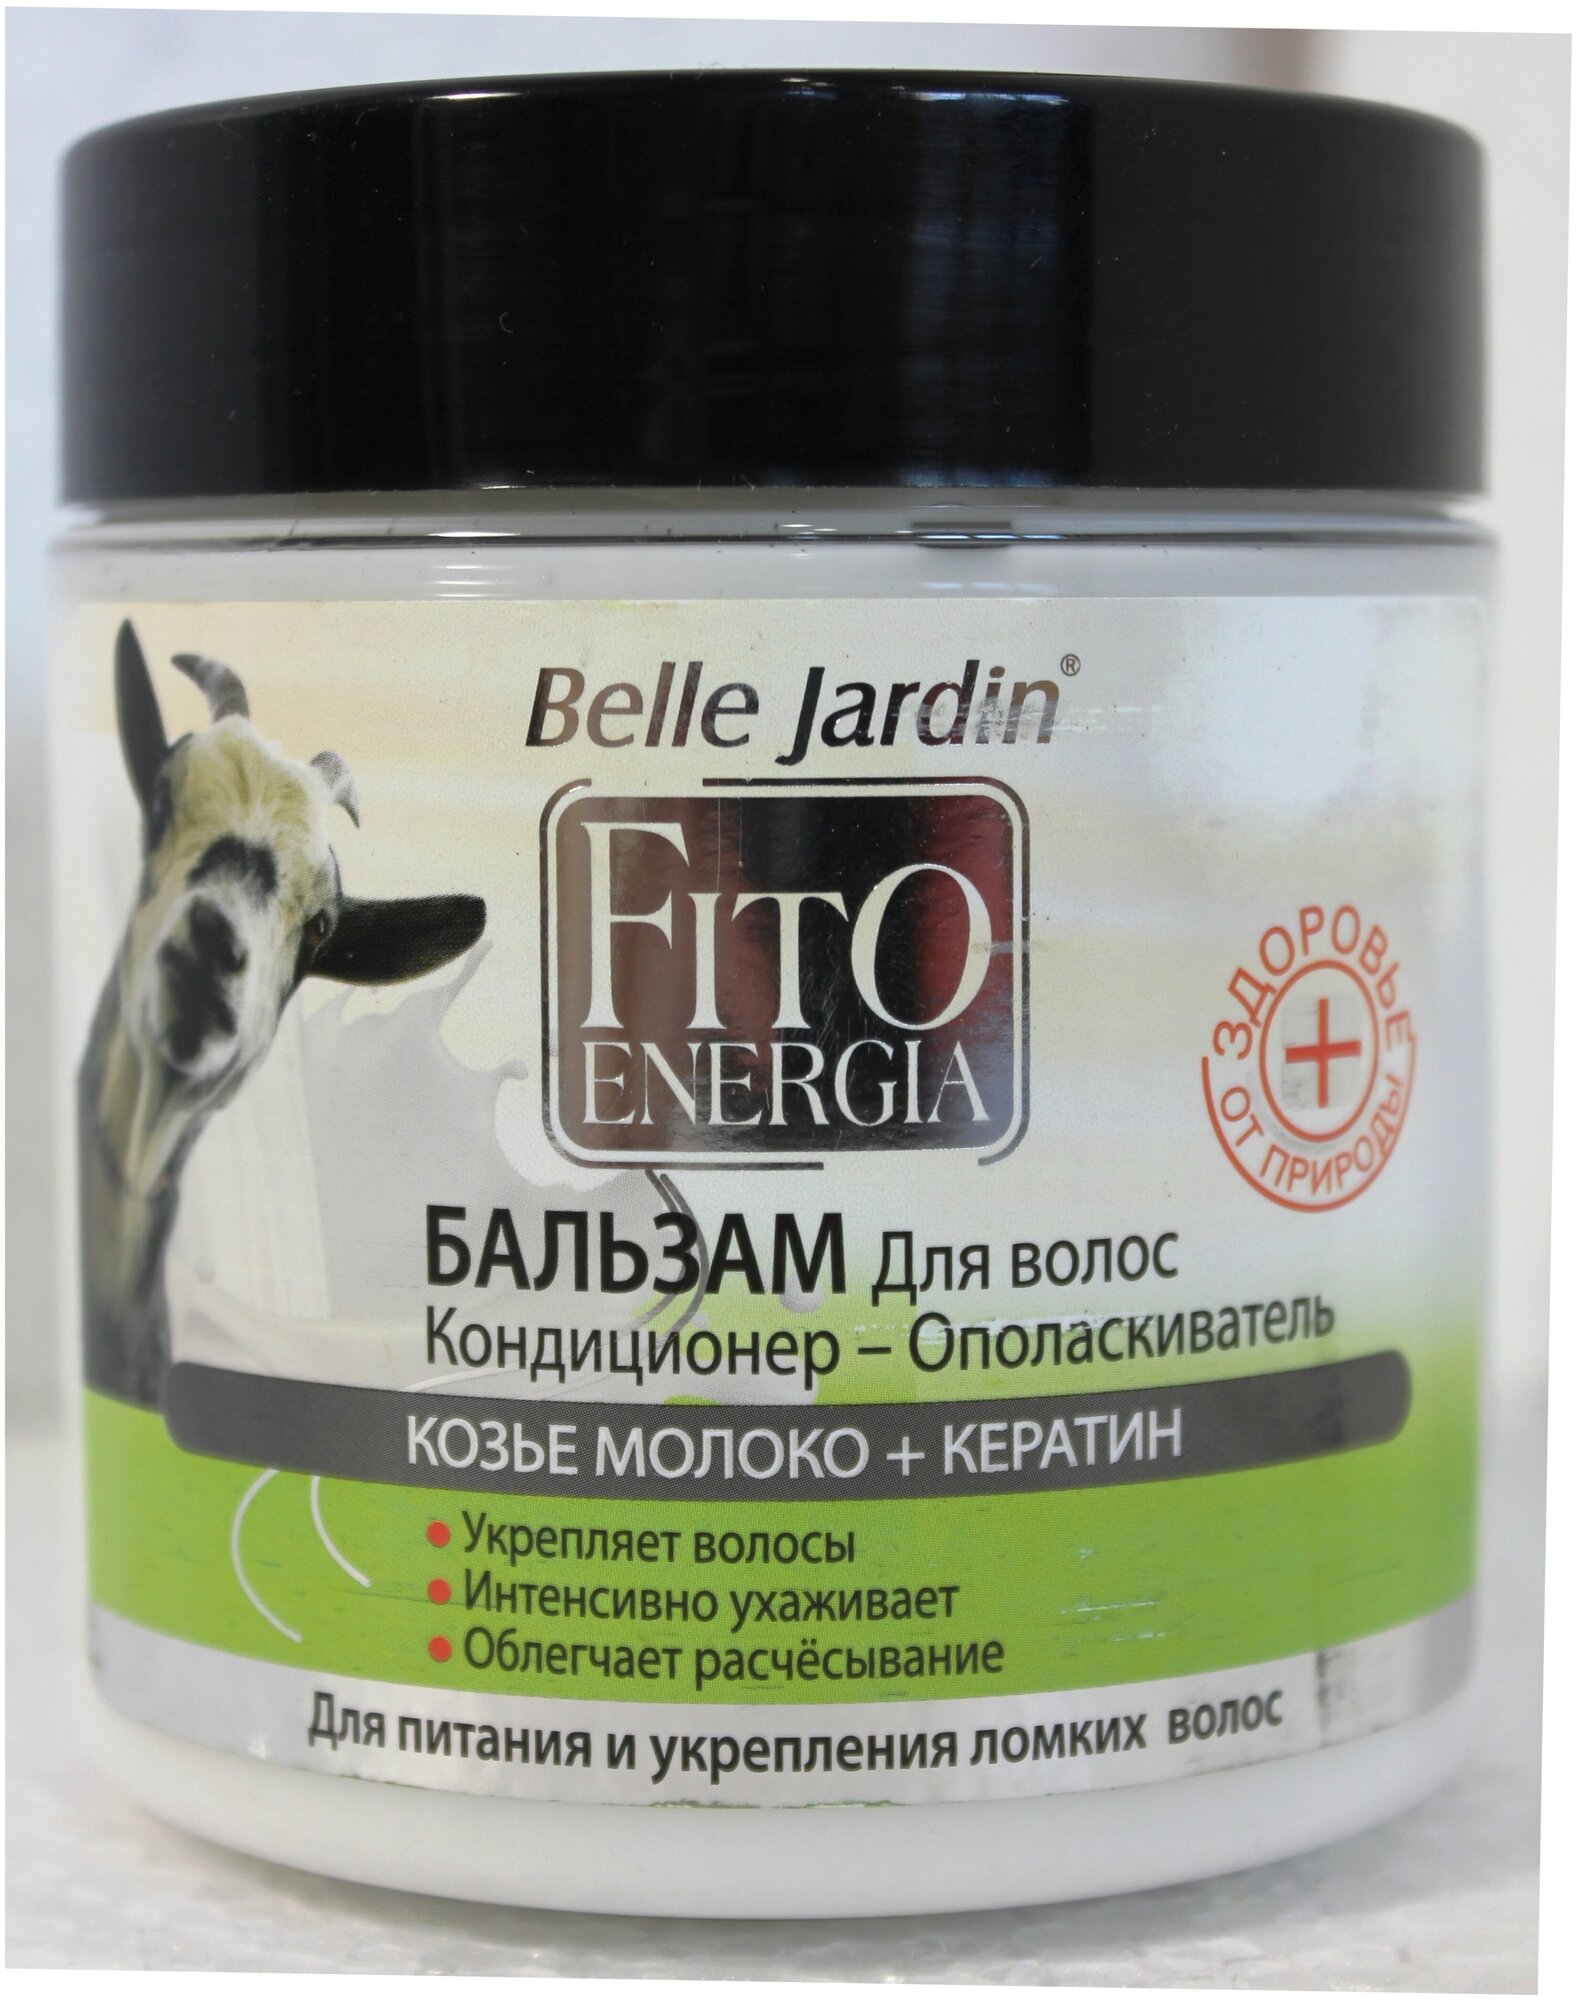 Belle Jardin Бальзам. для волос Кондиционер - Ополаскиватель Козье молоко + кератин, 450 мл